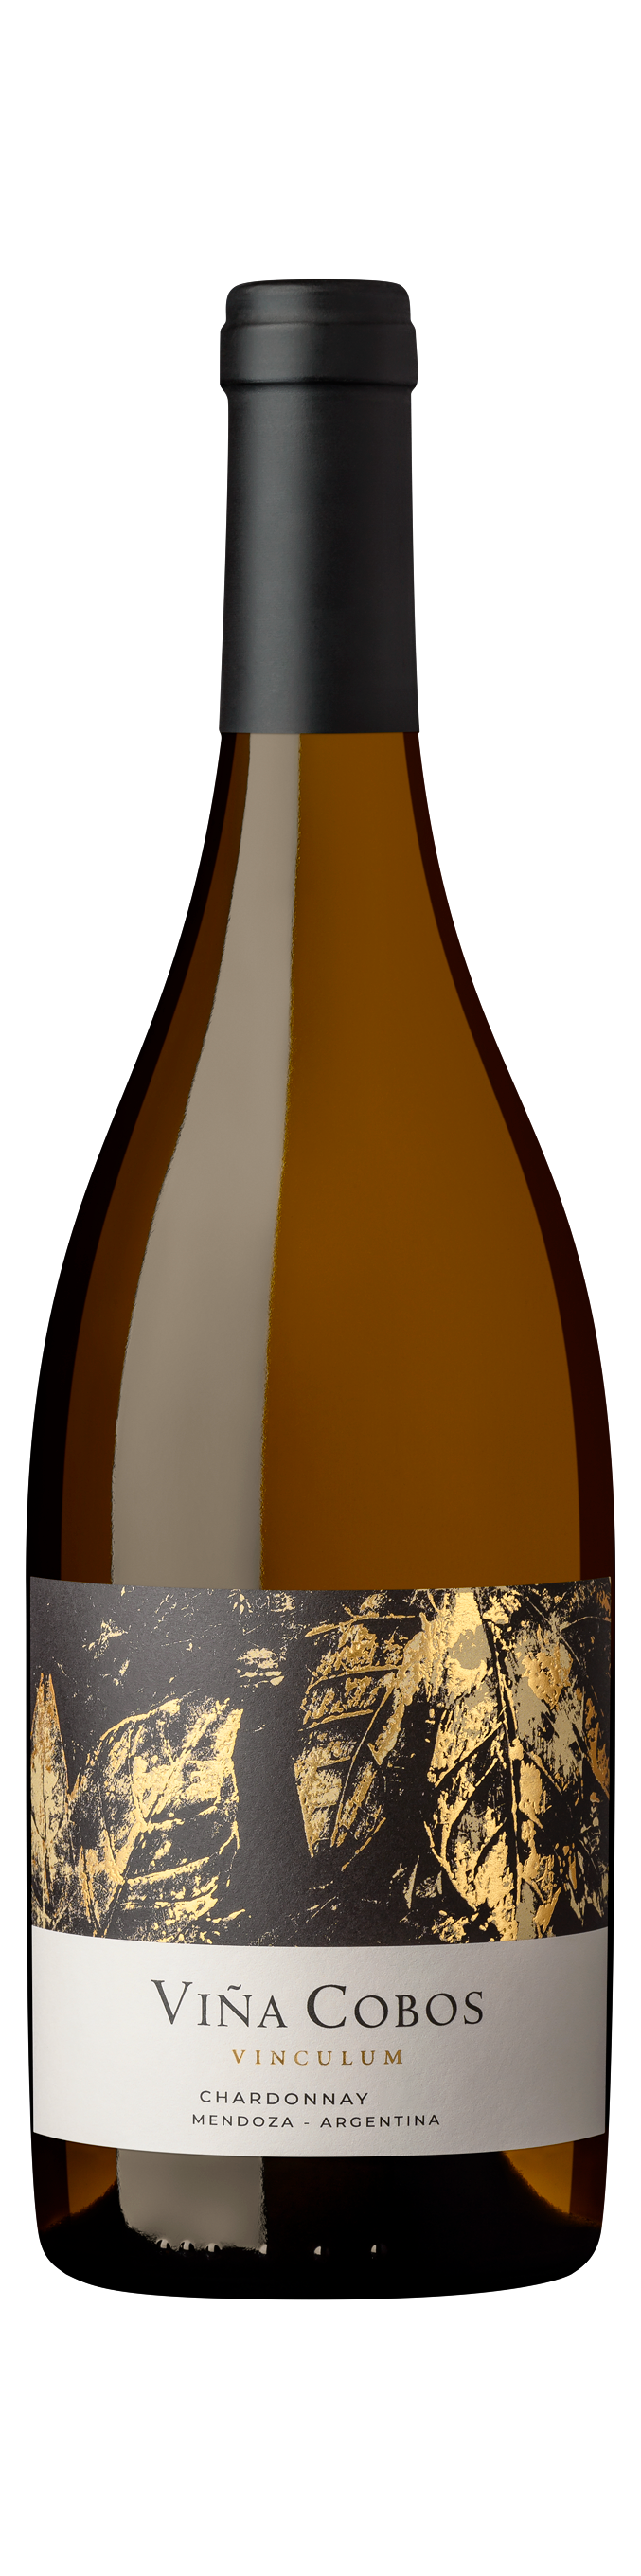 Viña Cobos, Vinculum Chardonnay, Mendoza, Argentina, 2021